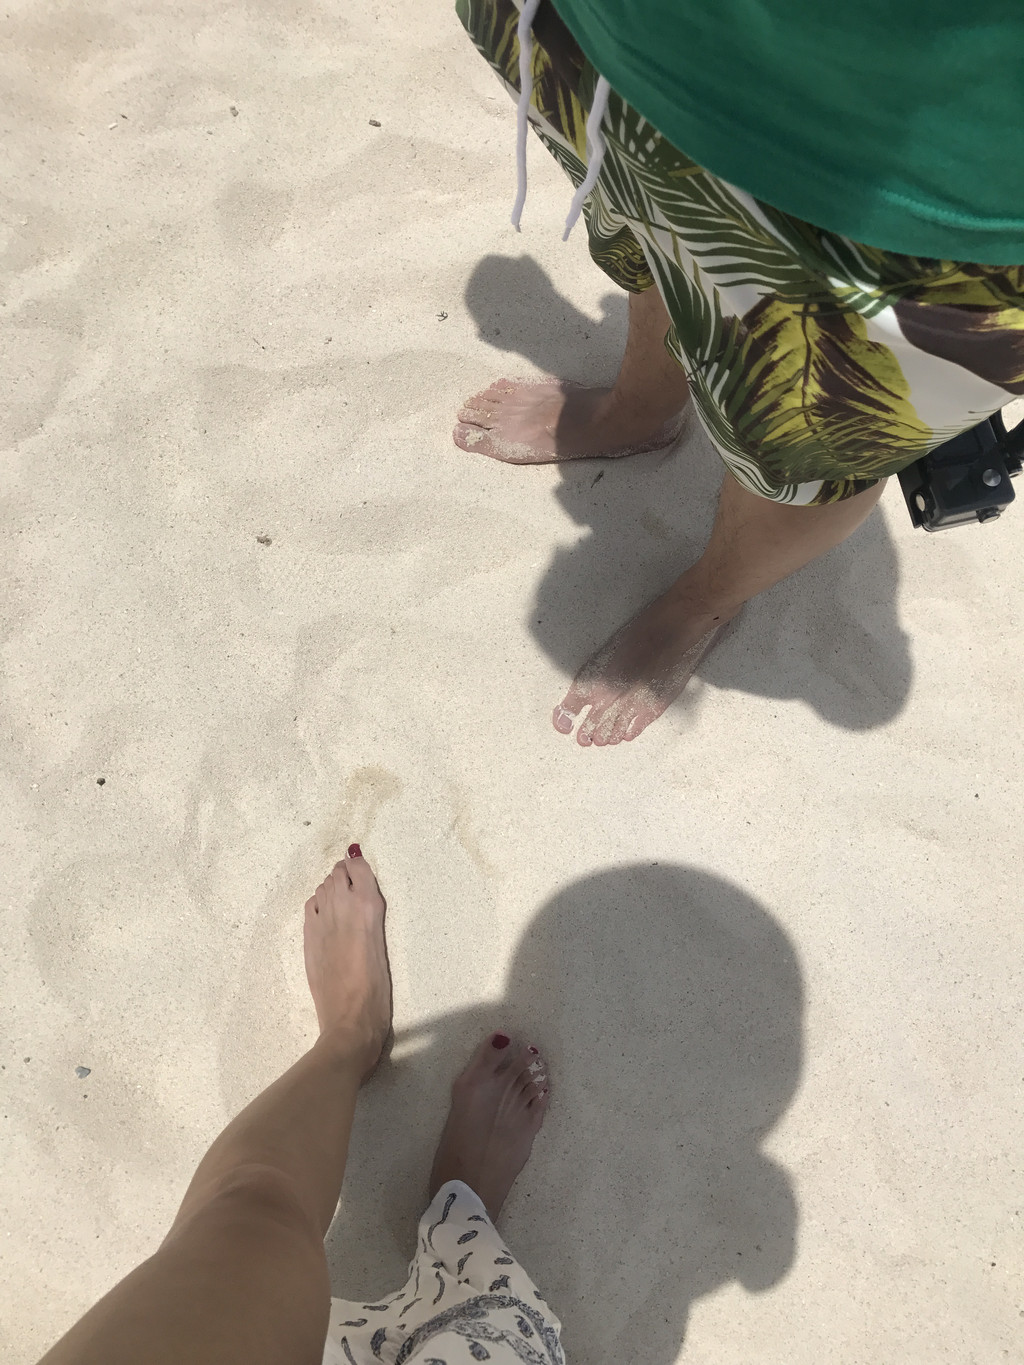 沙滩不是很烫,可以赤脚走路,回到上面,有专门冲沙的地方